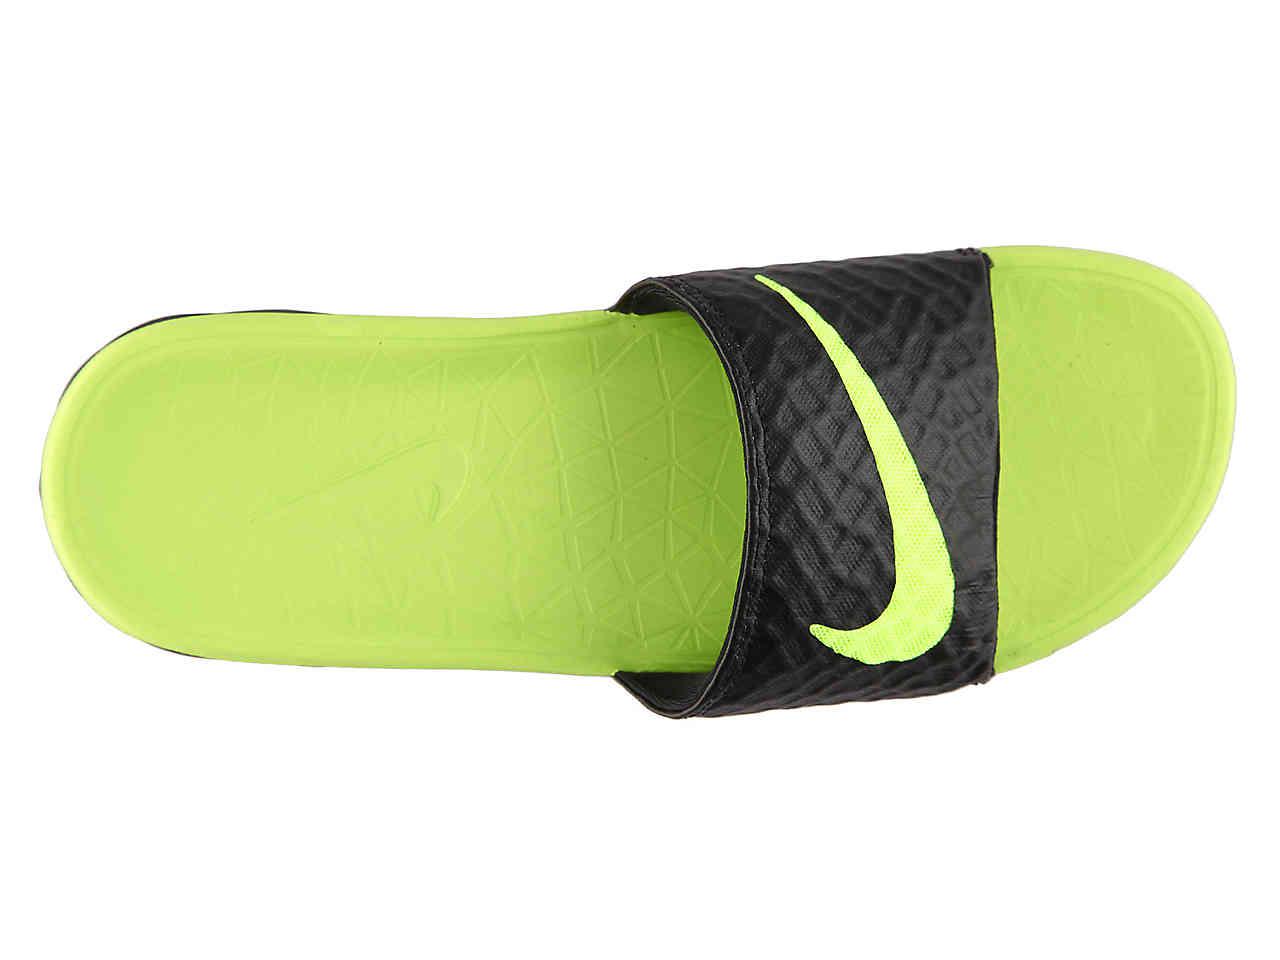 Nike Synthetic Benassi Solarsoft 2 Slide Sandal in Black/Neon Green (Green)  for Men - Lyst